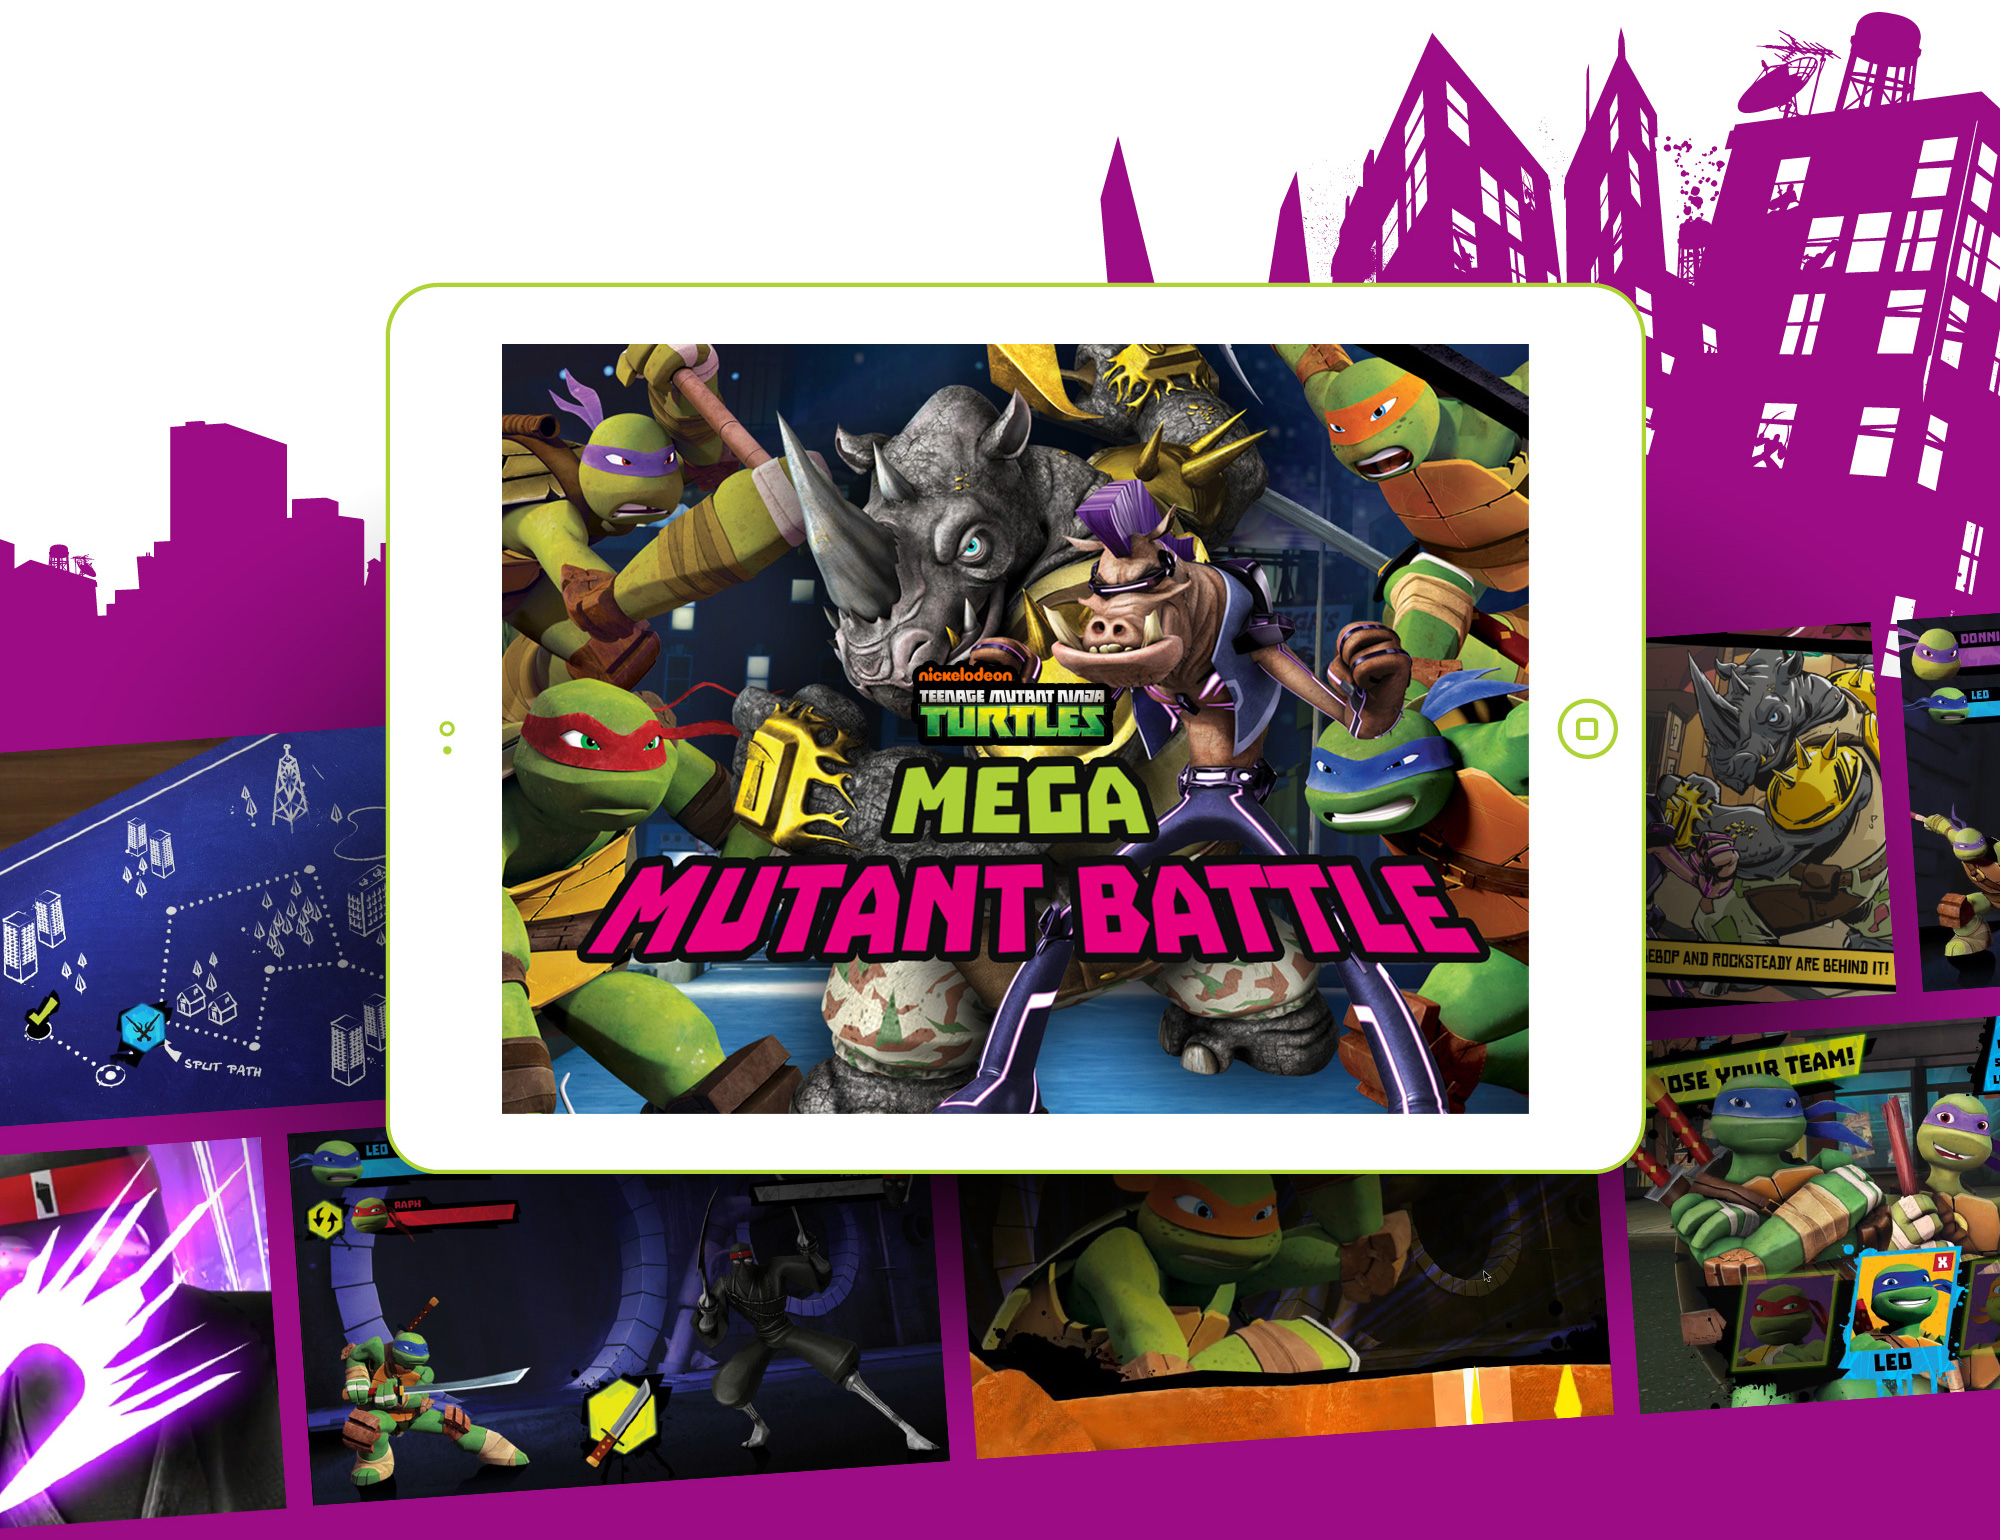 Teenage Mutant Ninja Turtles: Mega Mutant Battle